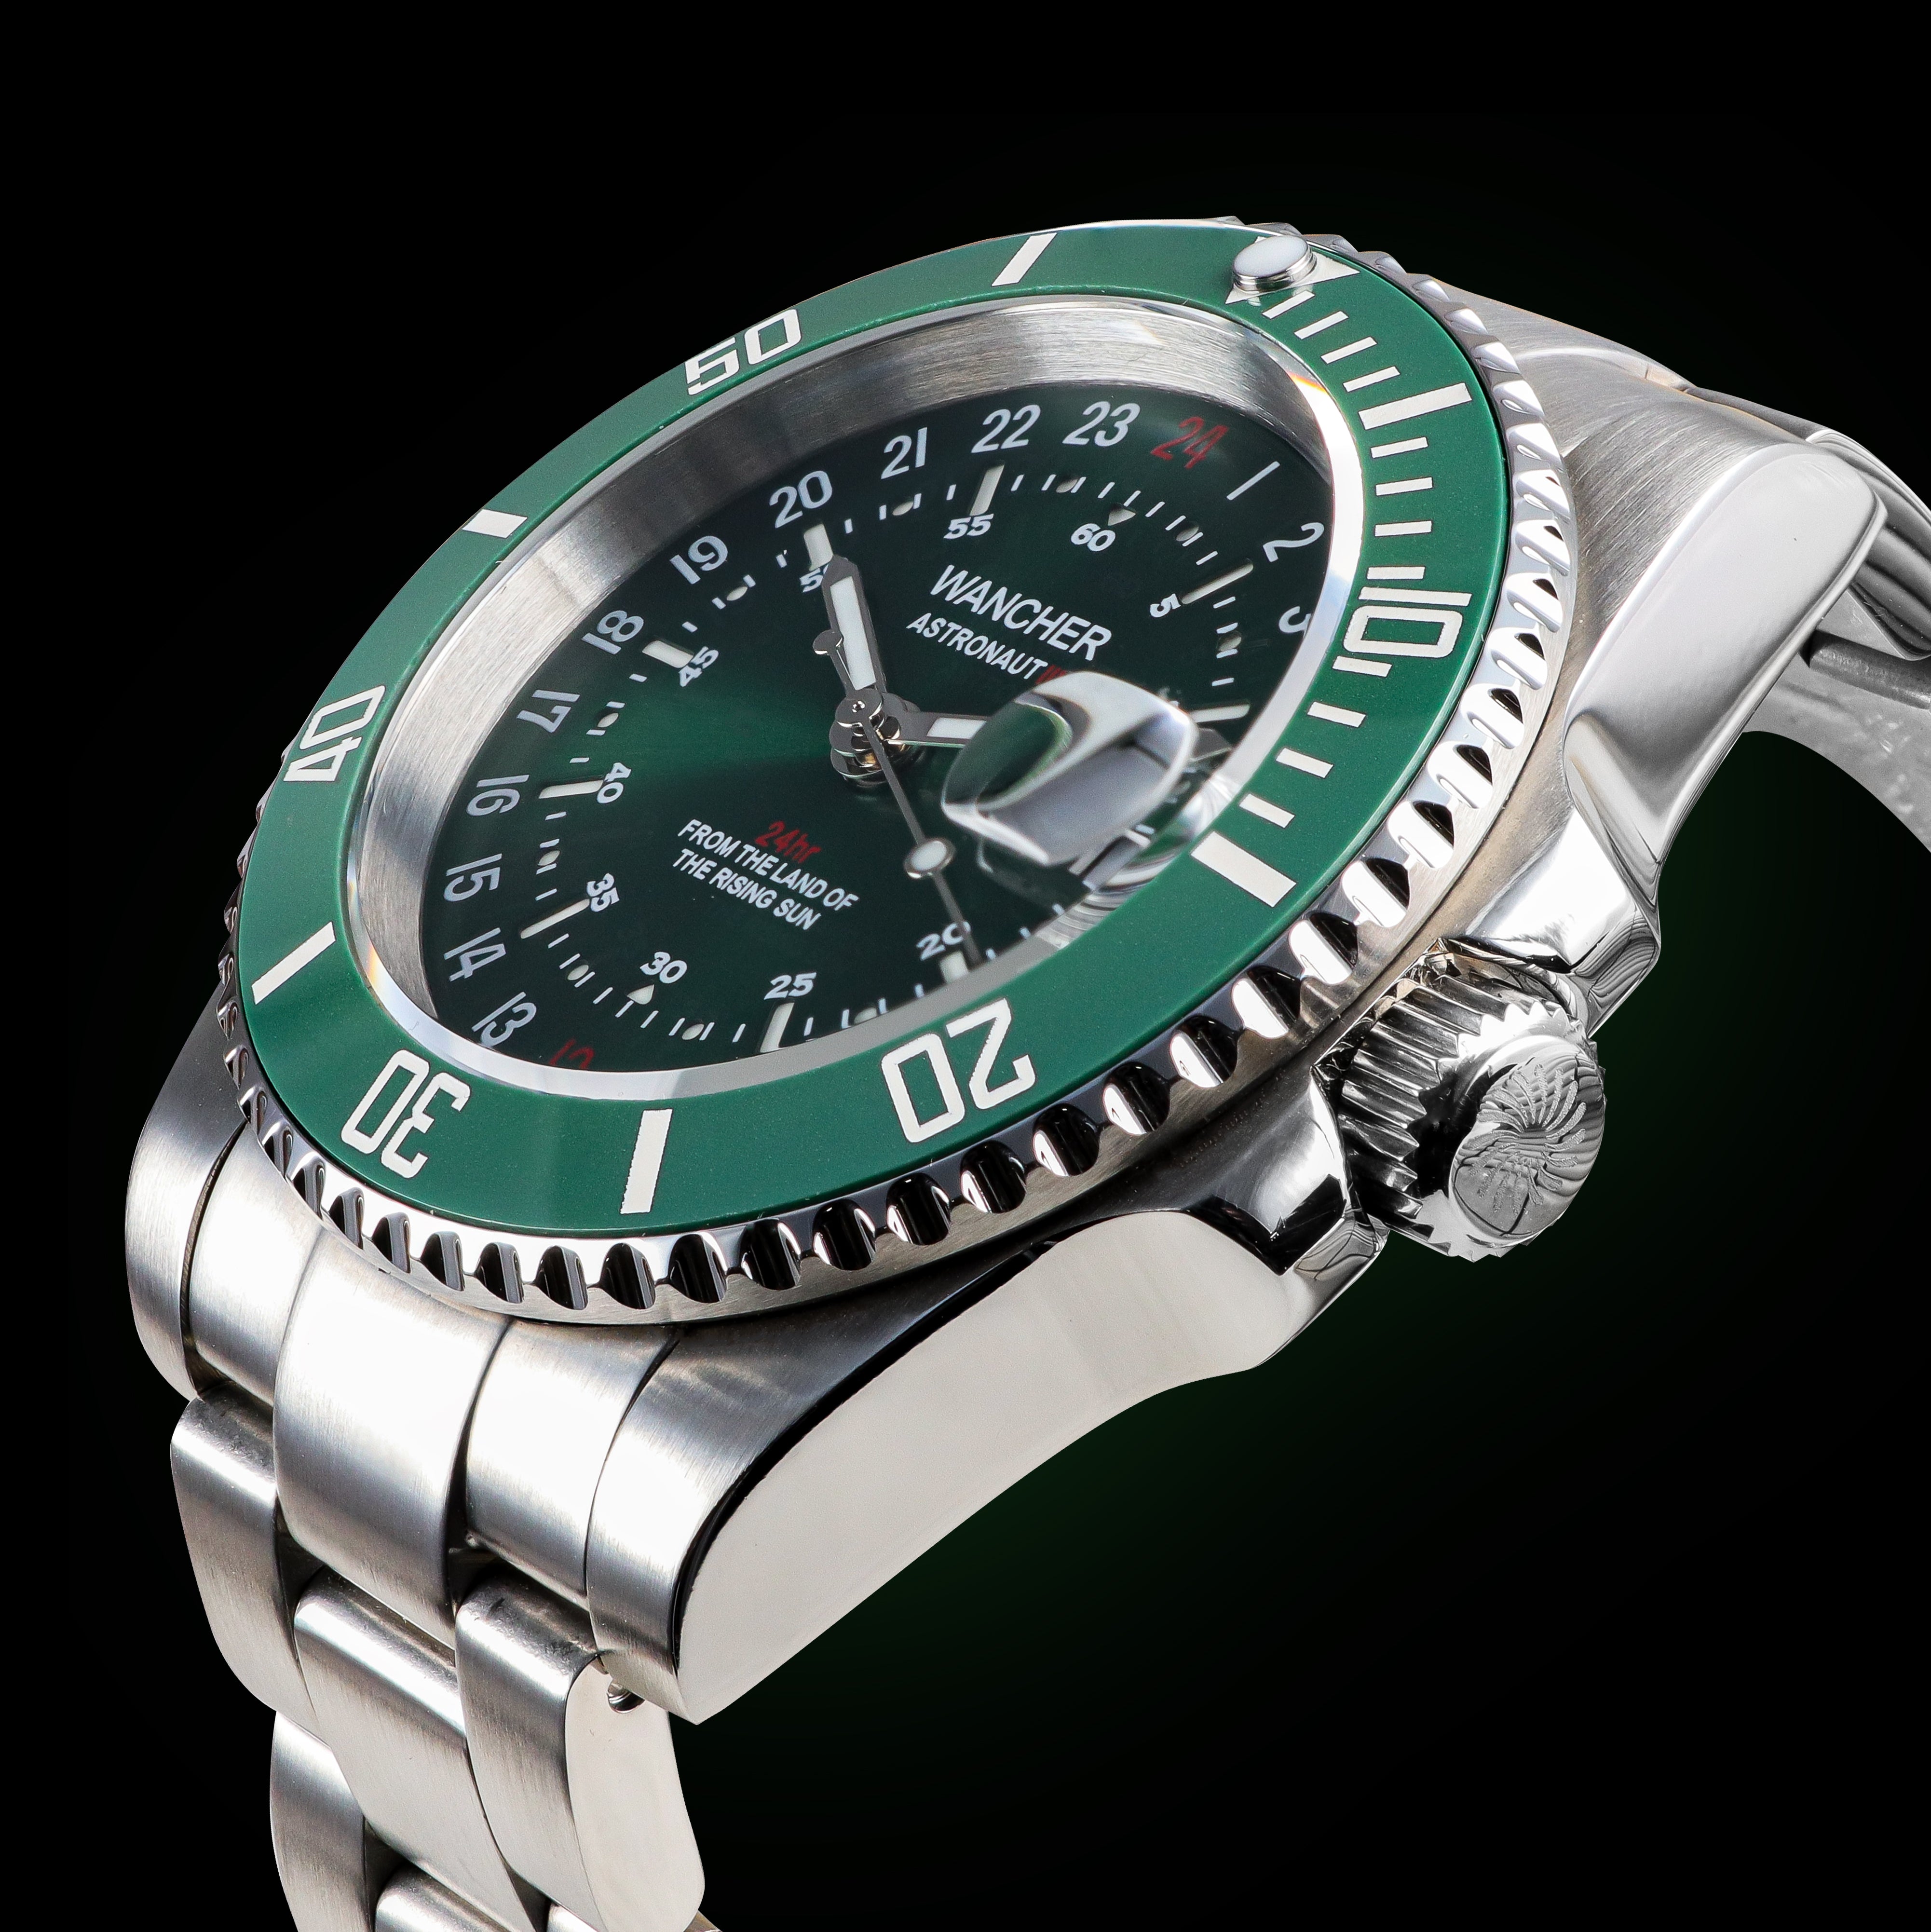 Wancher Watch Astronaut 3 Sun burst green automatic 24 hour watch 